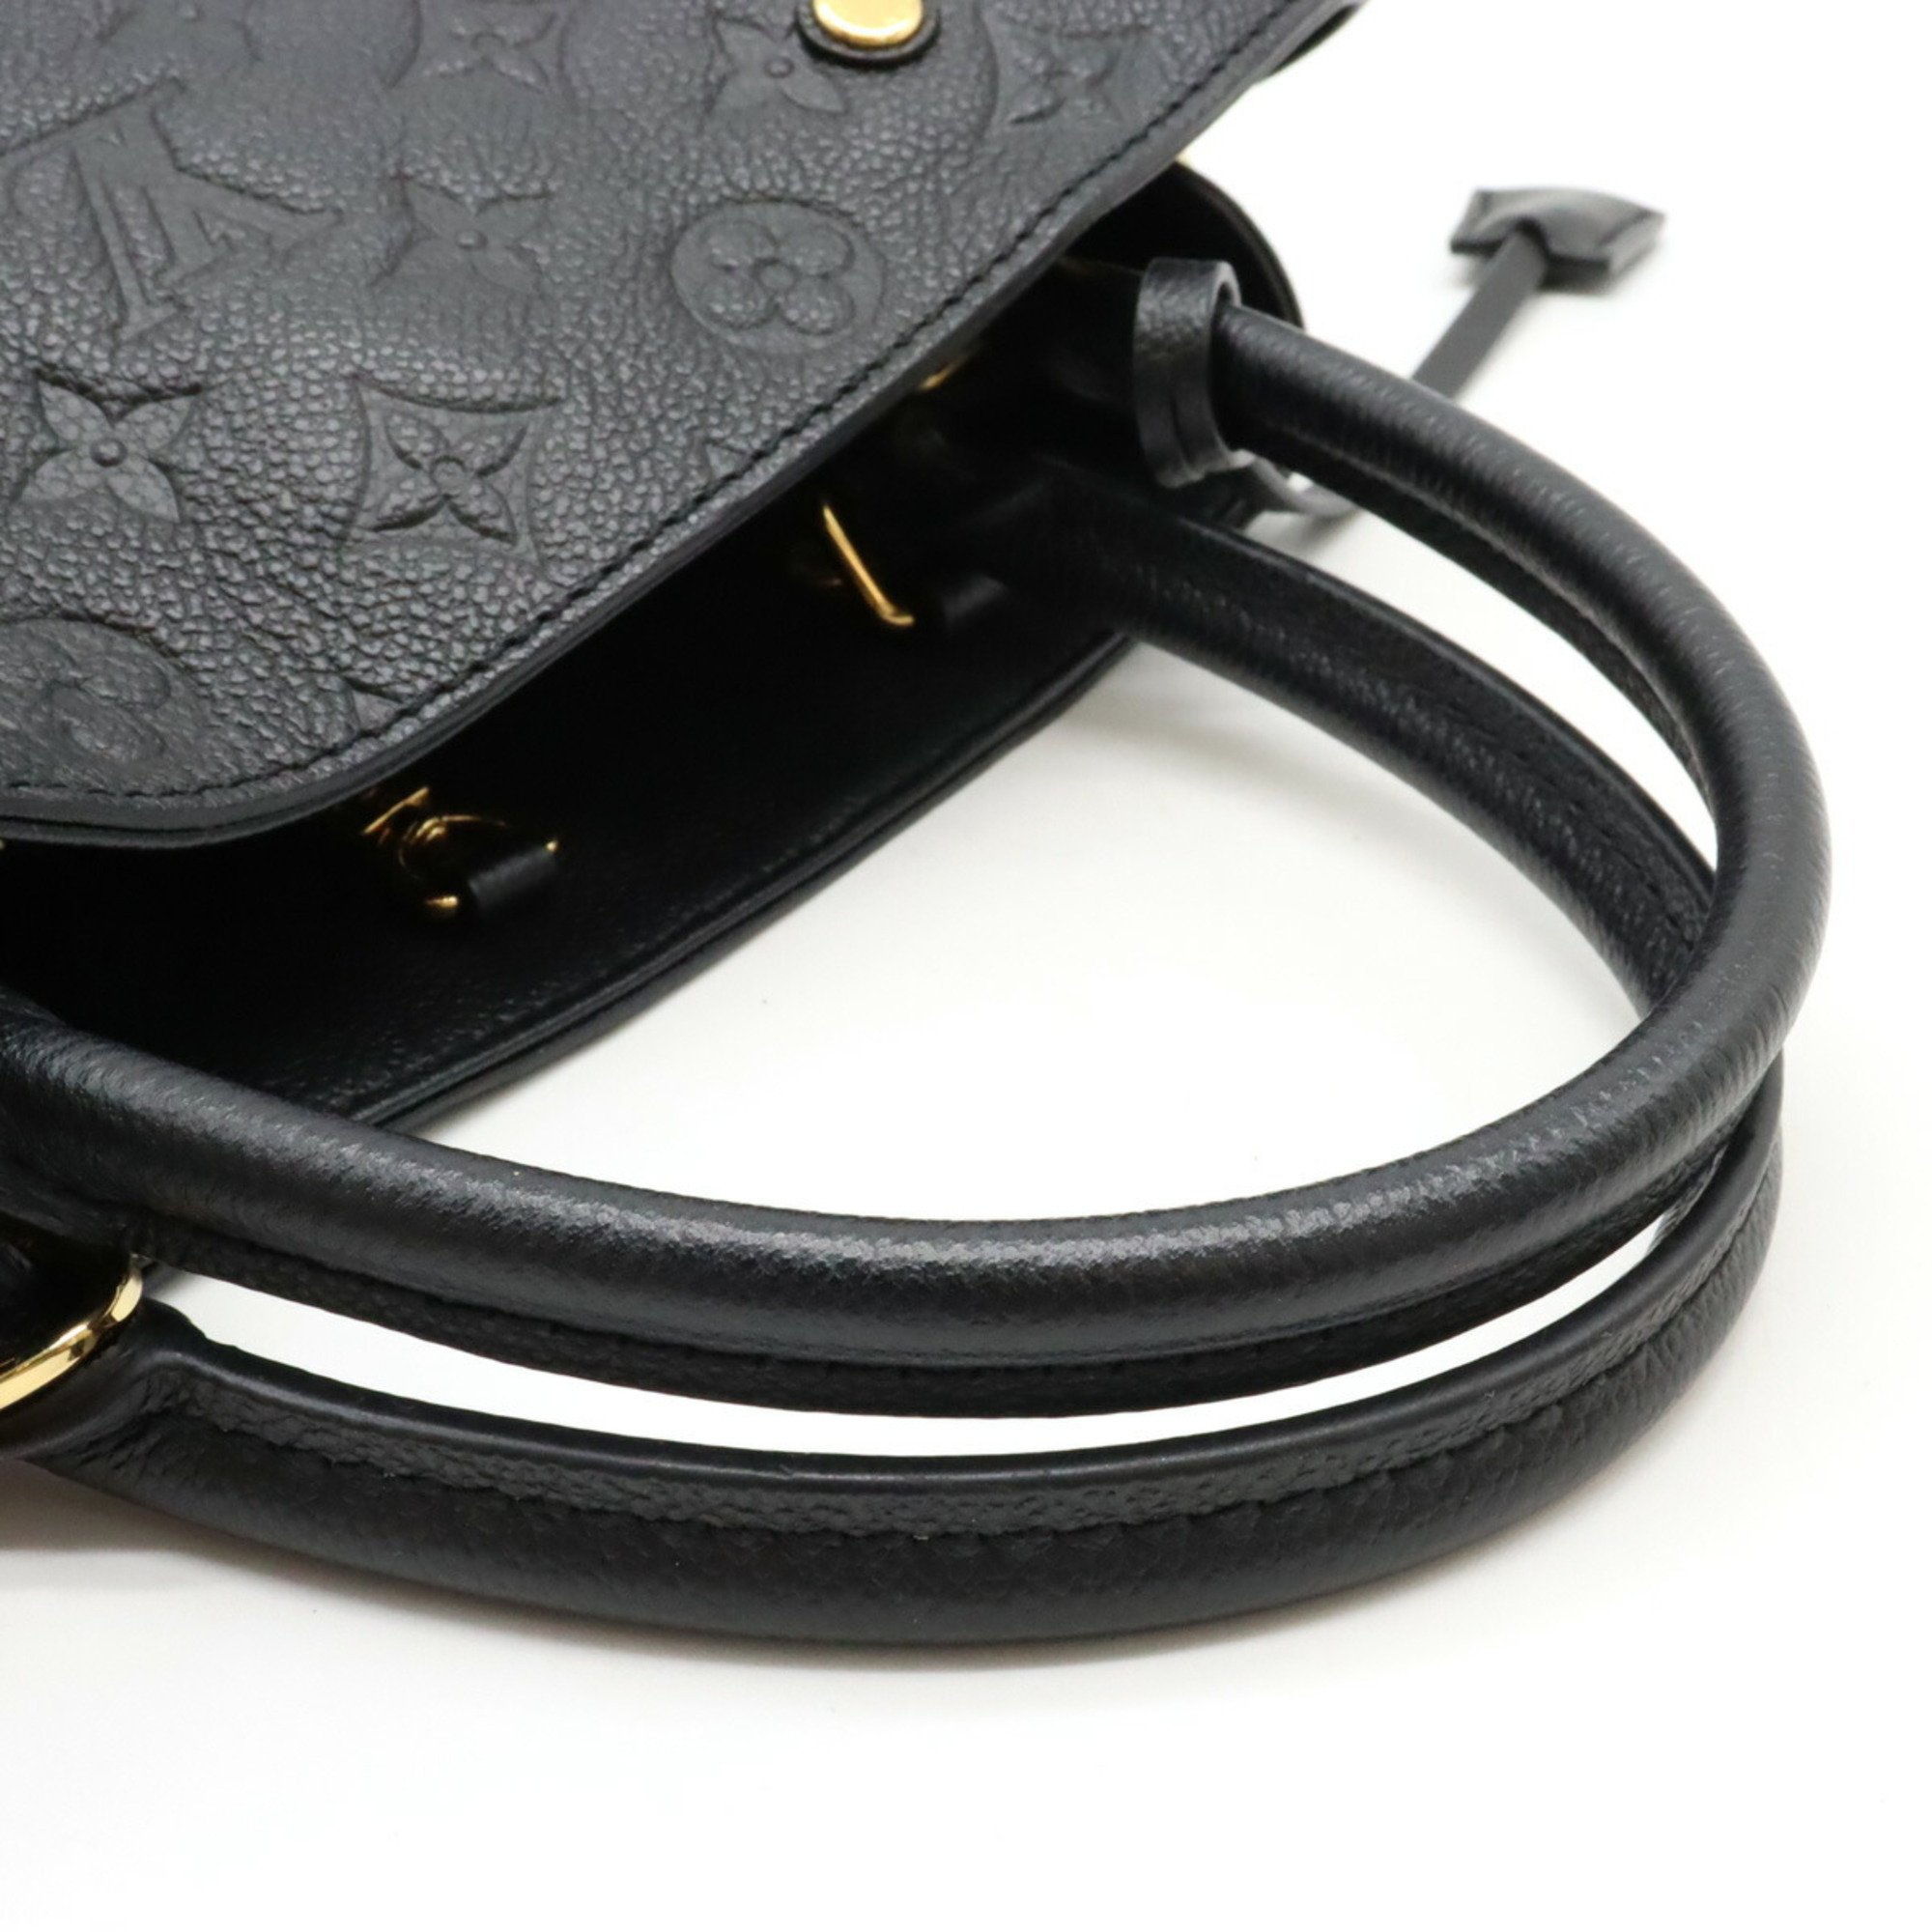 LOUIS VUITTON Louis Vuitton Monogram Empreinte Montaigne MM Handbag Shoulder Bag Noir Black M41048